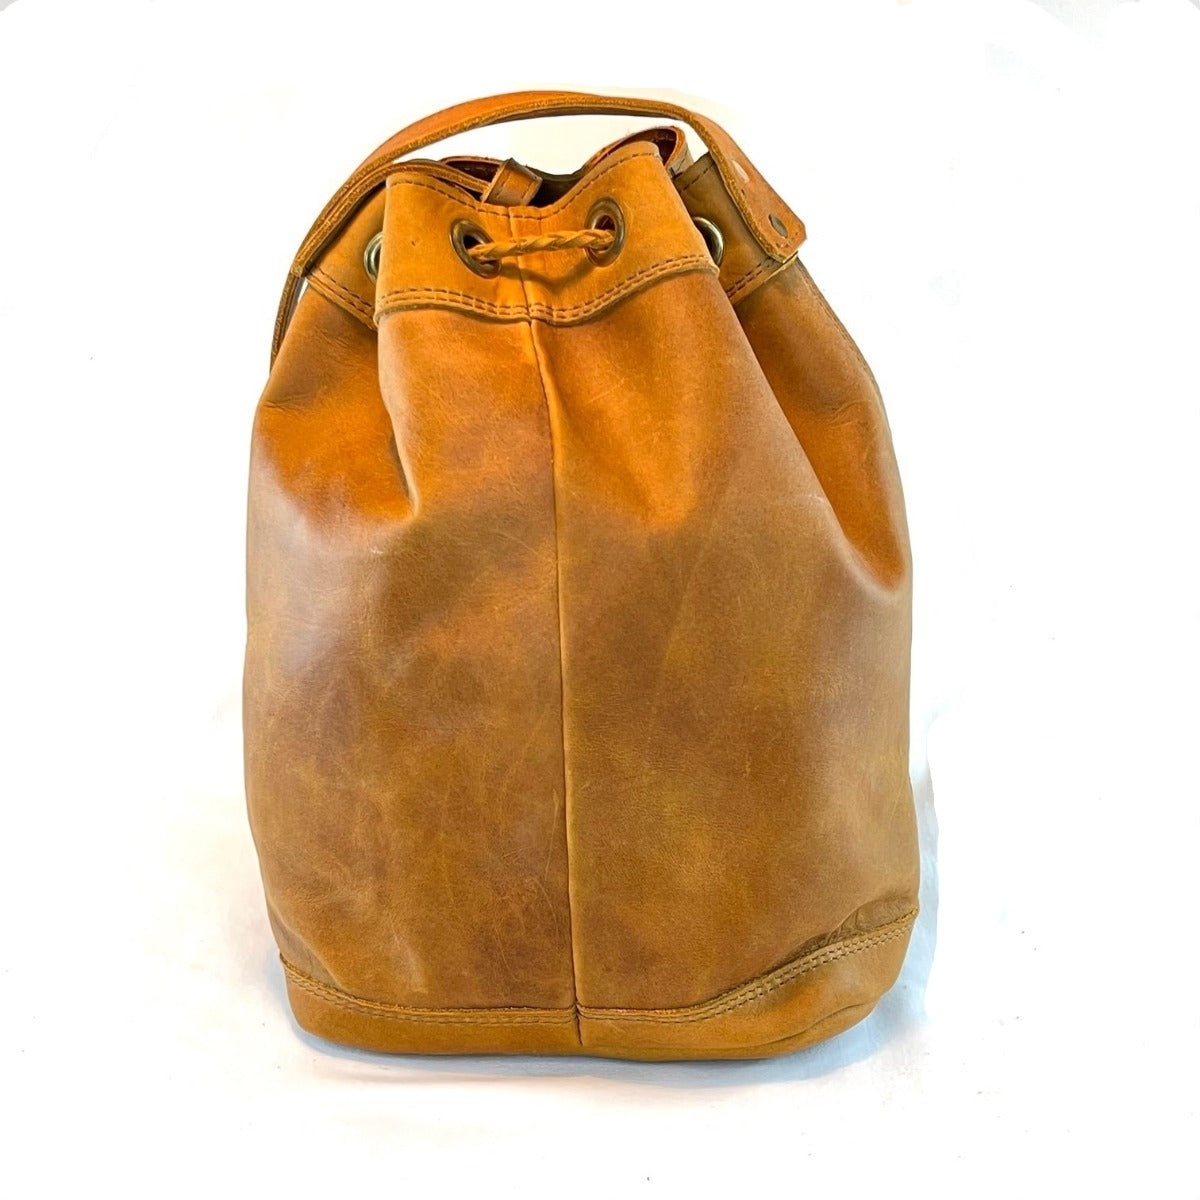 Buy Urjaa Bucket Bag Online - Studiobeej